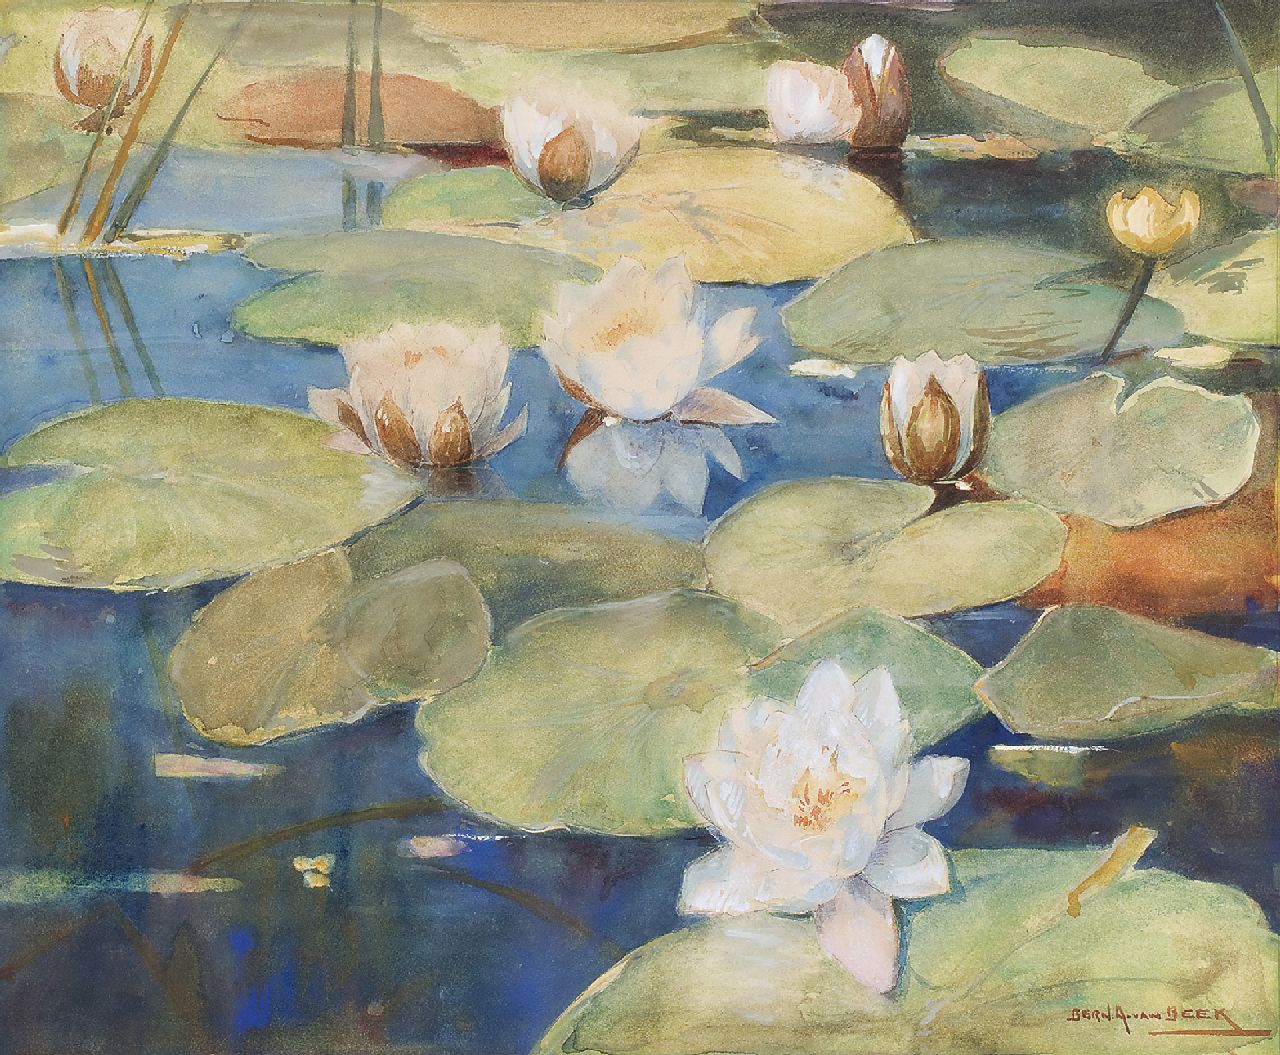 Beek B.A. van | Bernardus Antonie van Beek, Water lilies, watercolour on paper 46.3 x 55.8 cm, signed l.r.